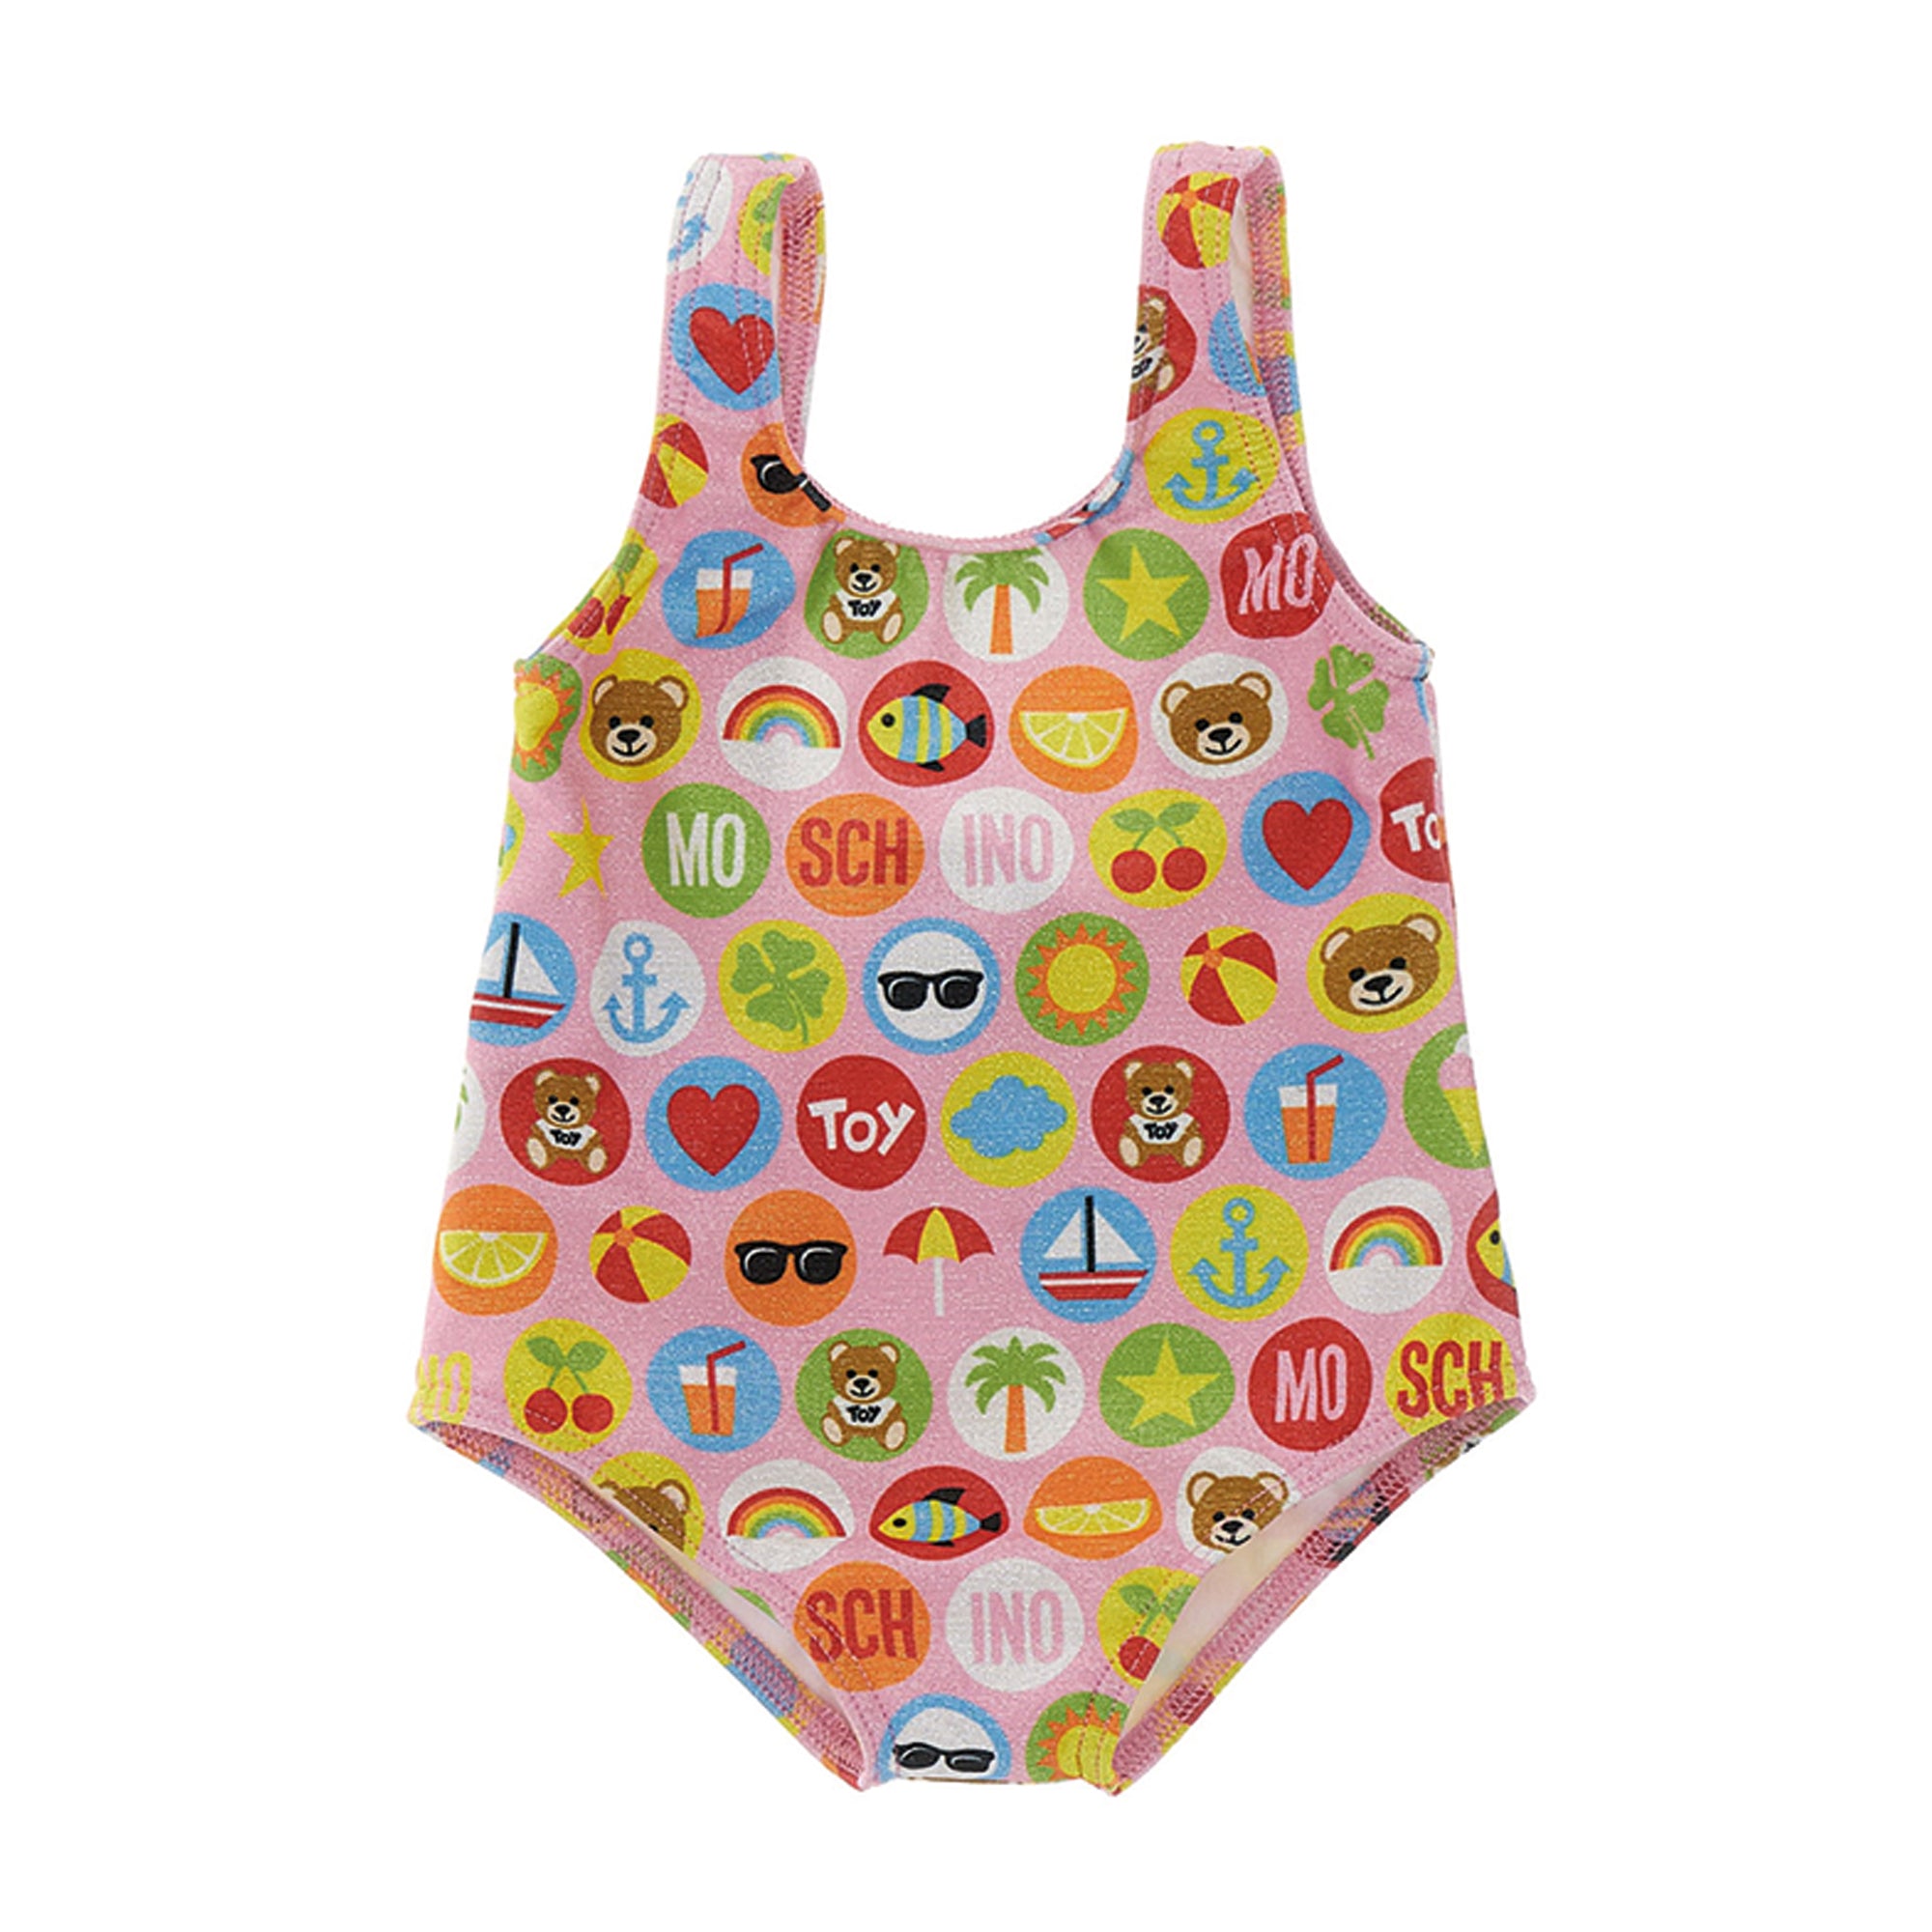 Moschino Baby Girls Printed Swimsuit